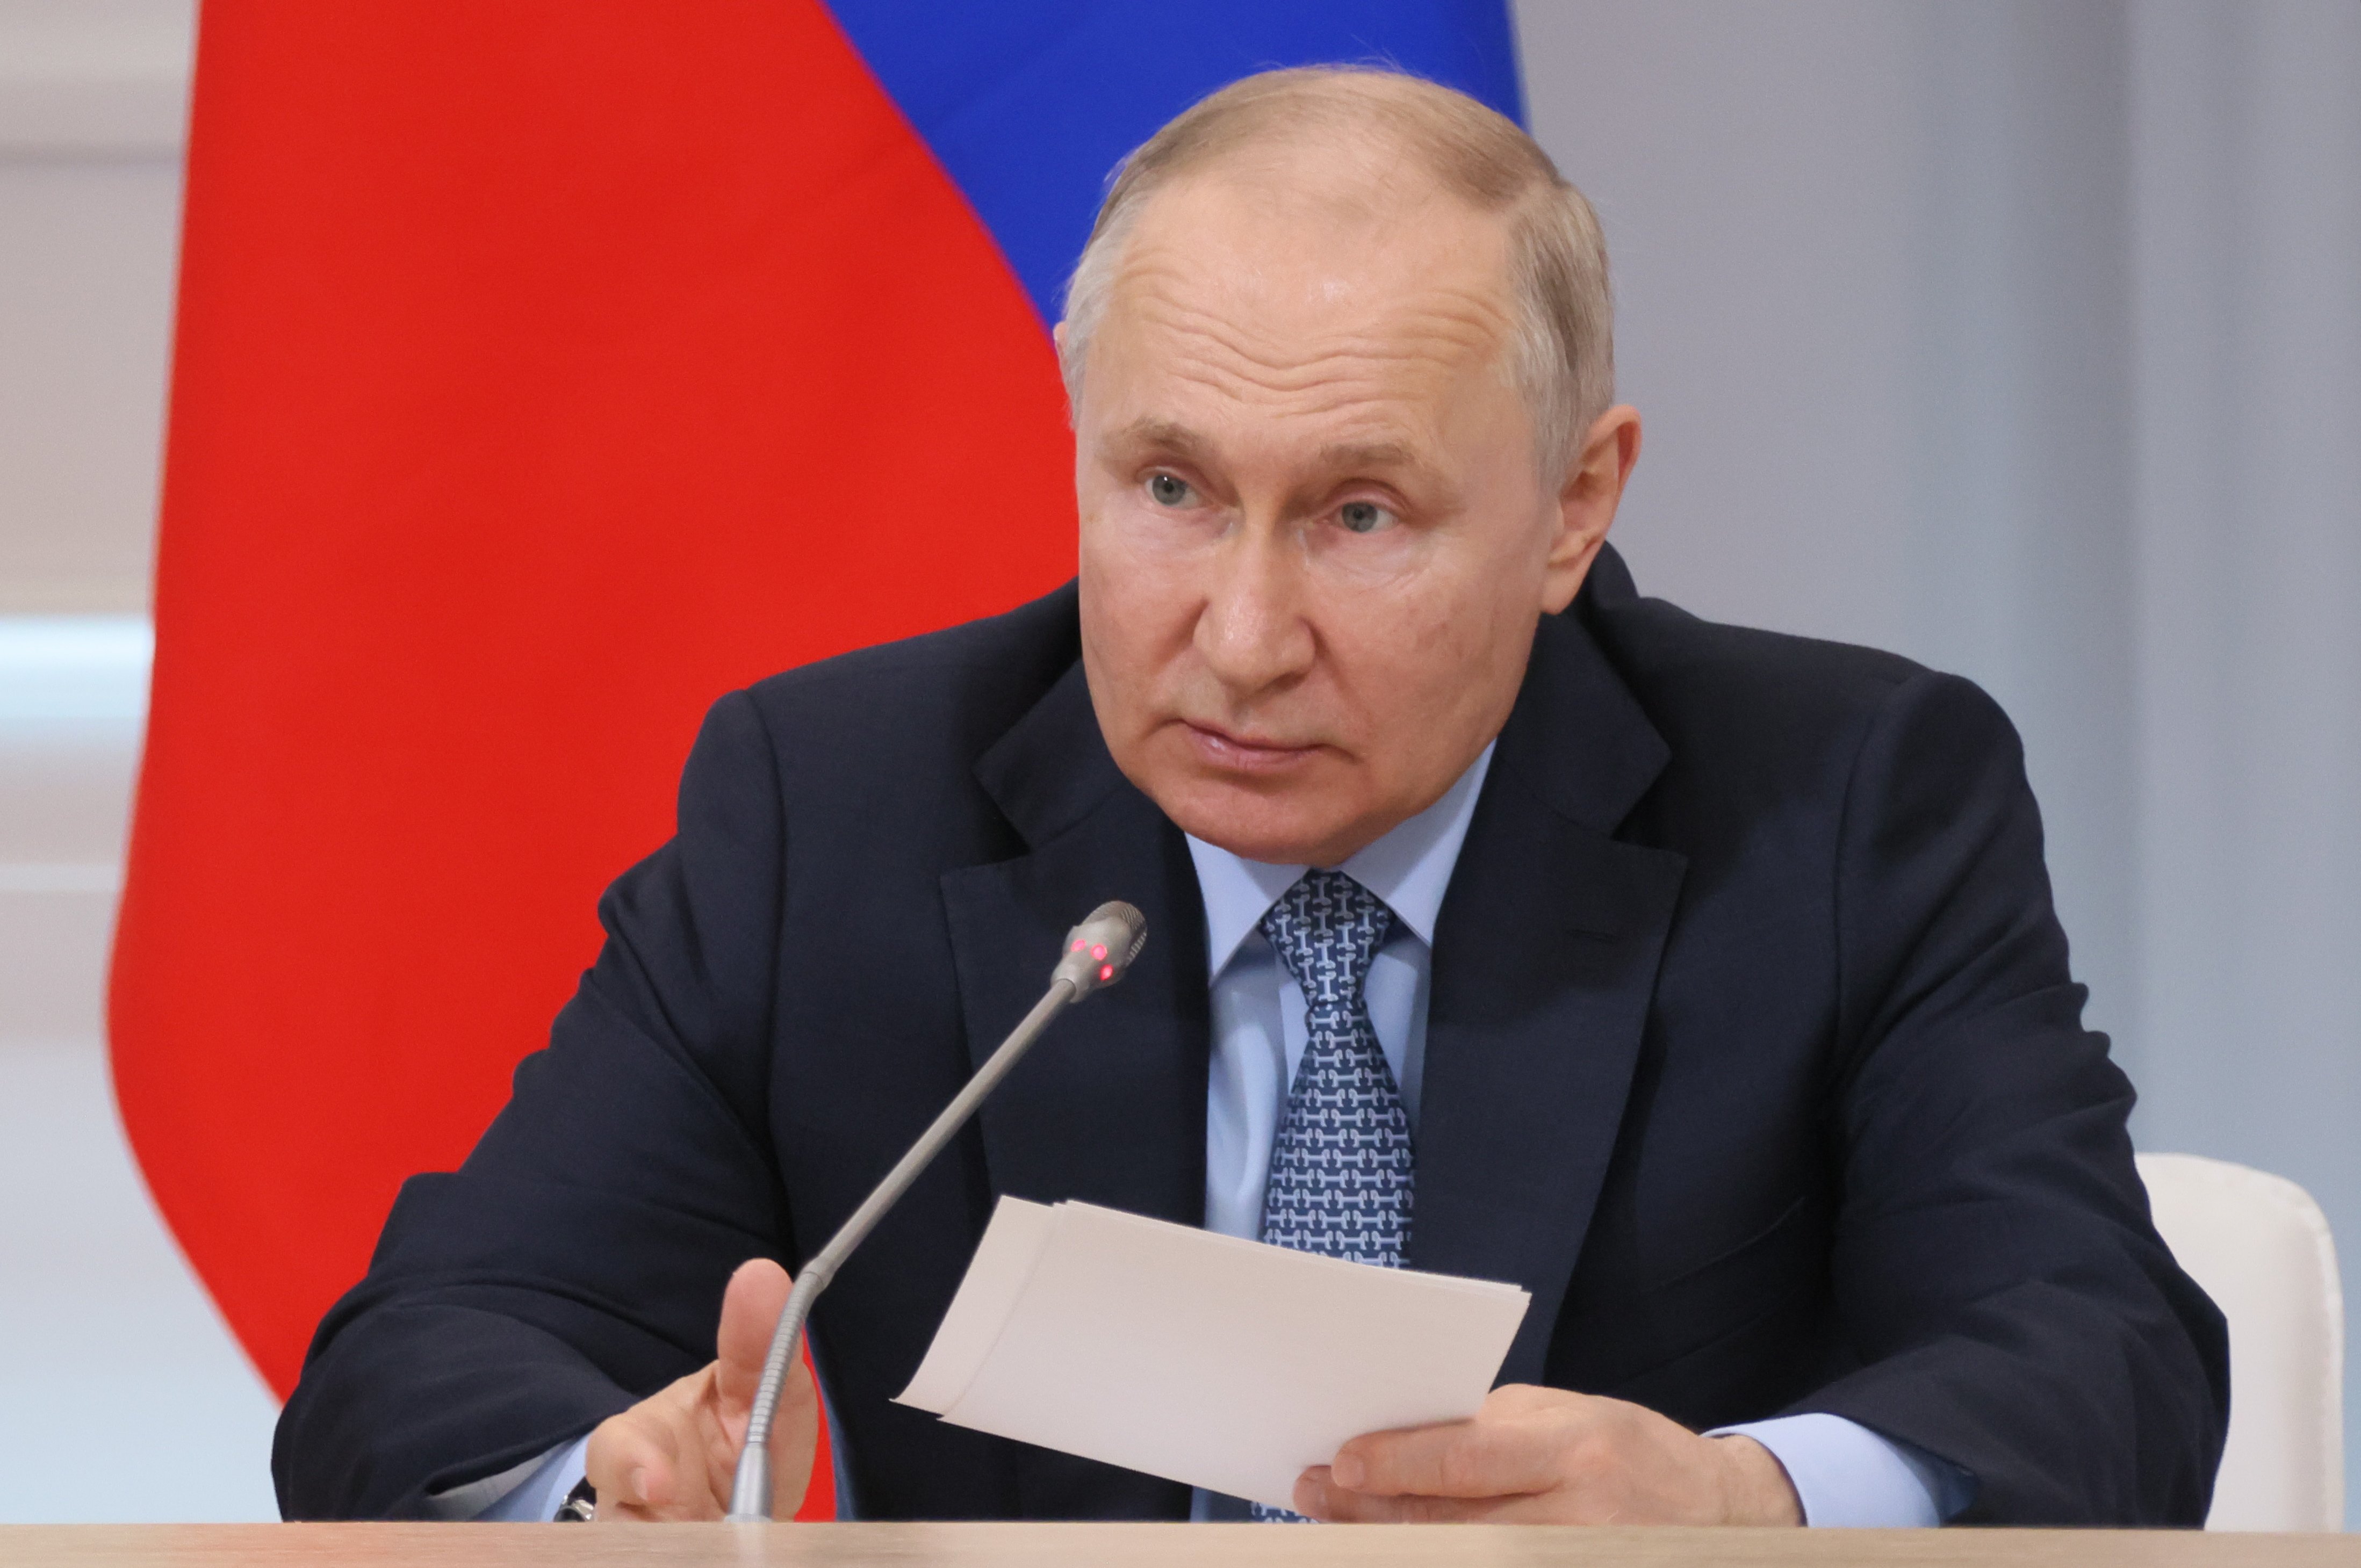 Vladímir Putin justifica les armes nuclears: garanteix la seguretat de Rússia